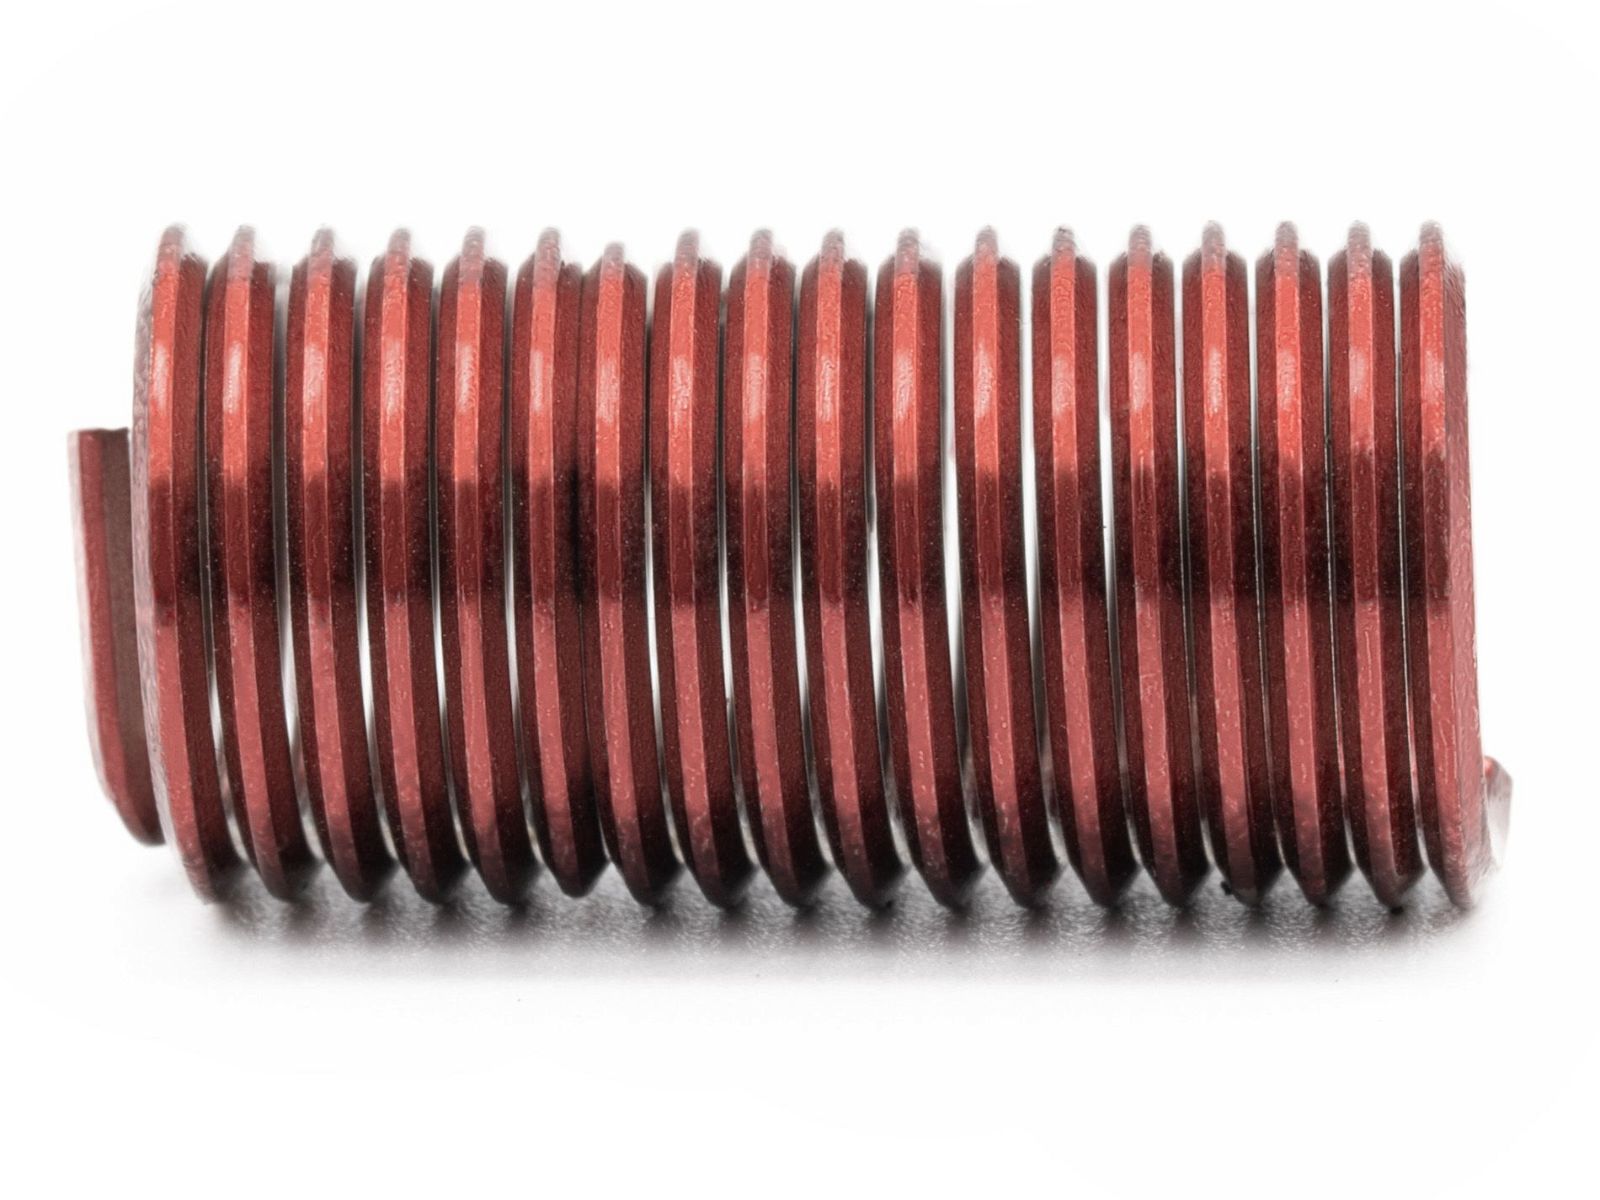 BaerCoil Wire Thread Inserts M 14 x 2.0 - 3.0 D (42 mm) - screw grip (screw locking) - 50 pcs.